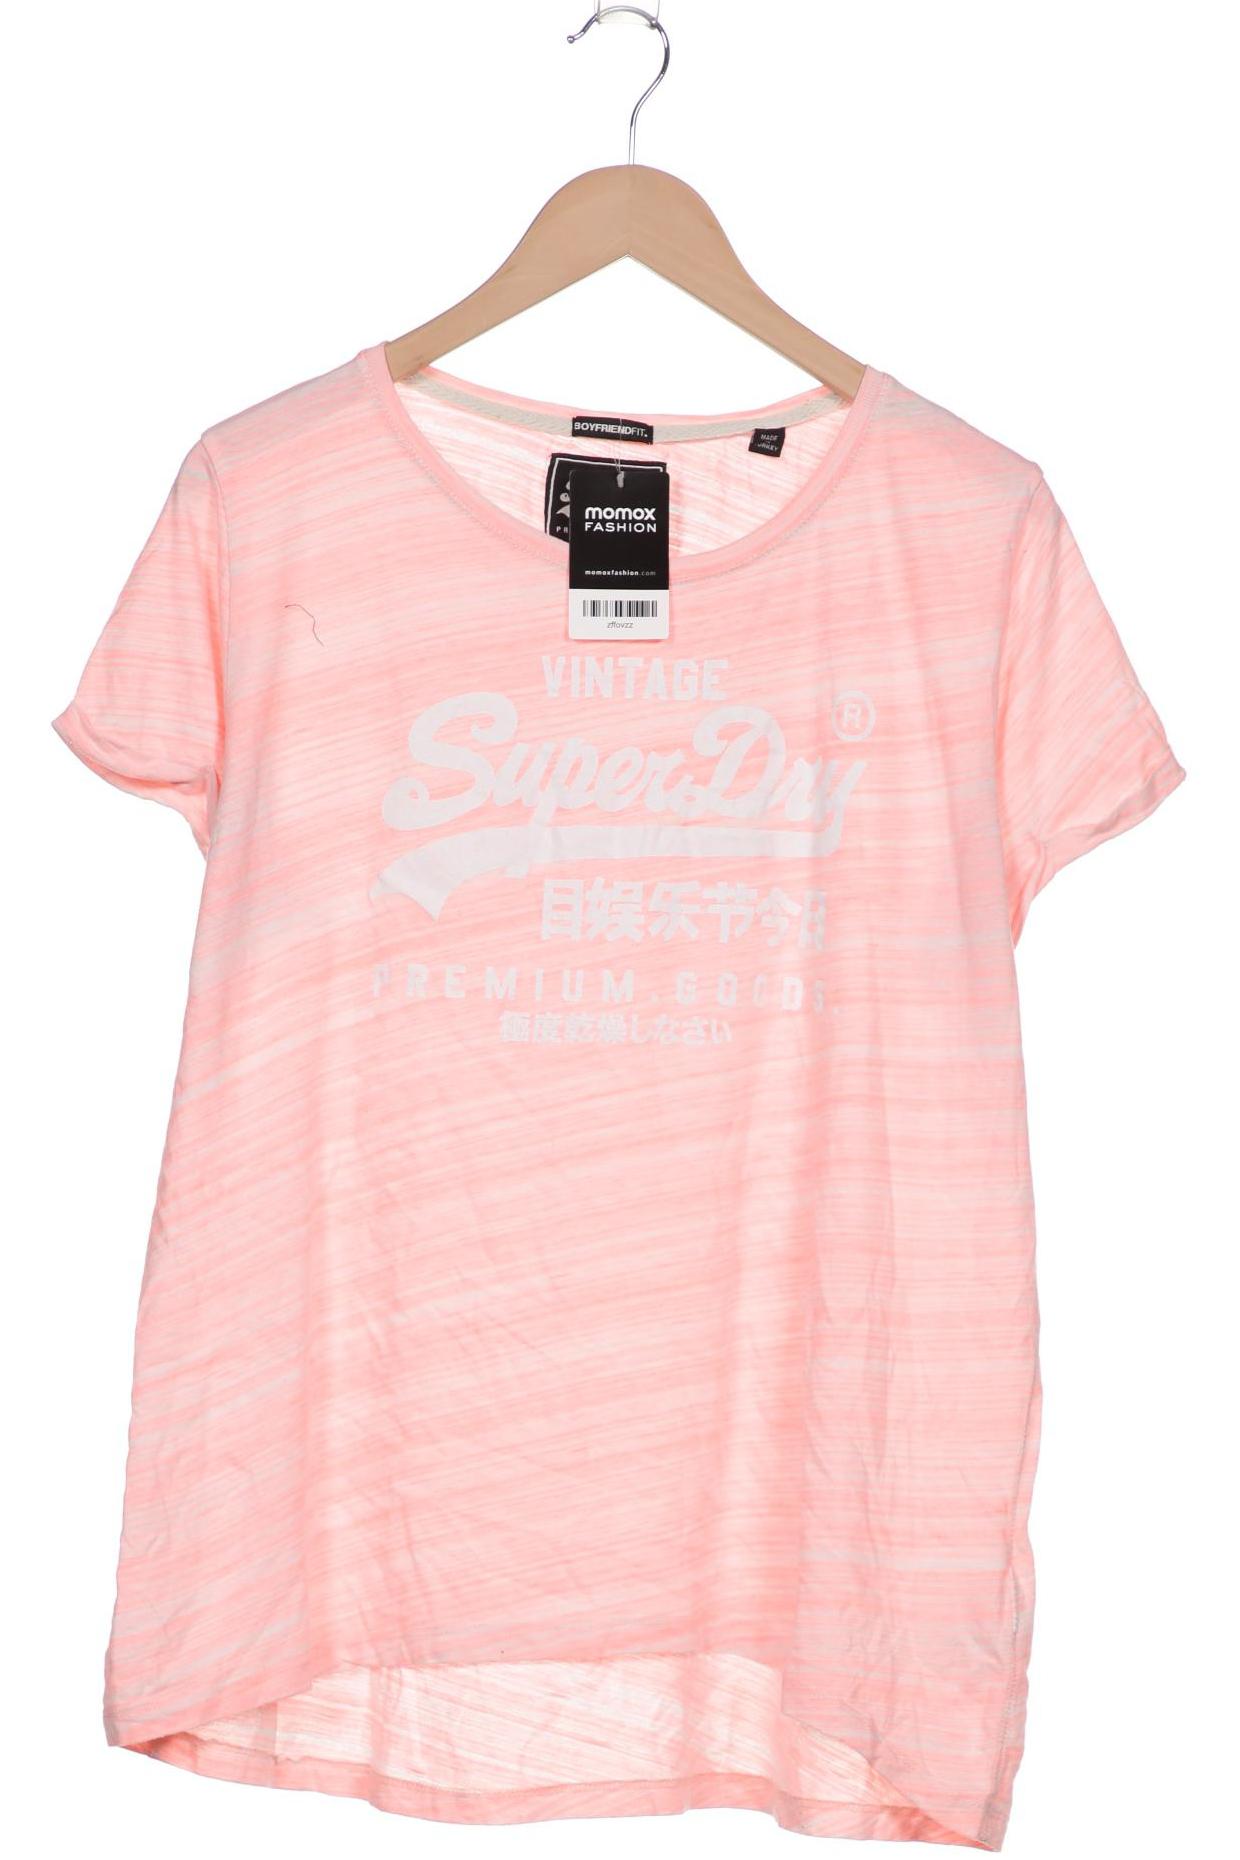 Superdry Damen T-Shirt, pink von Superdry